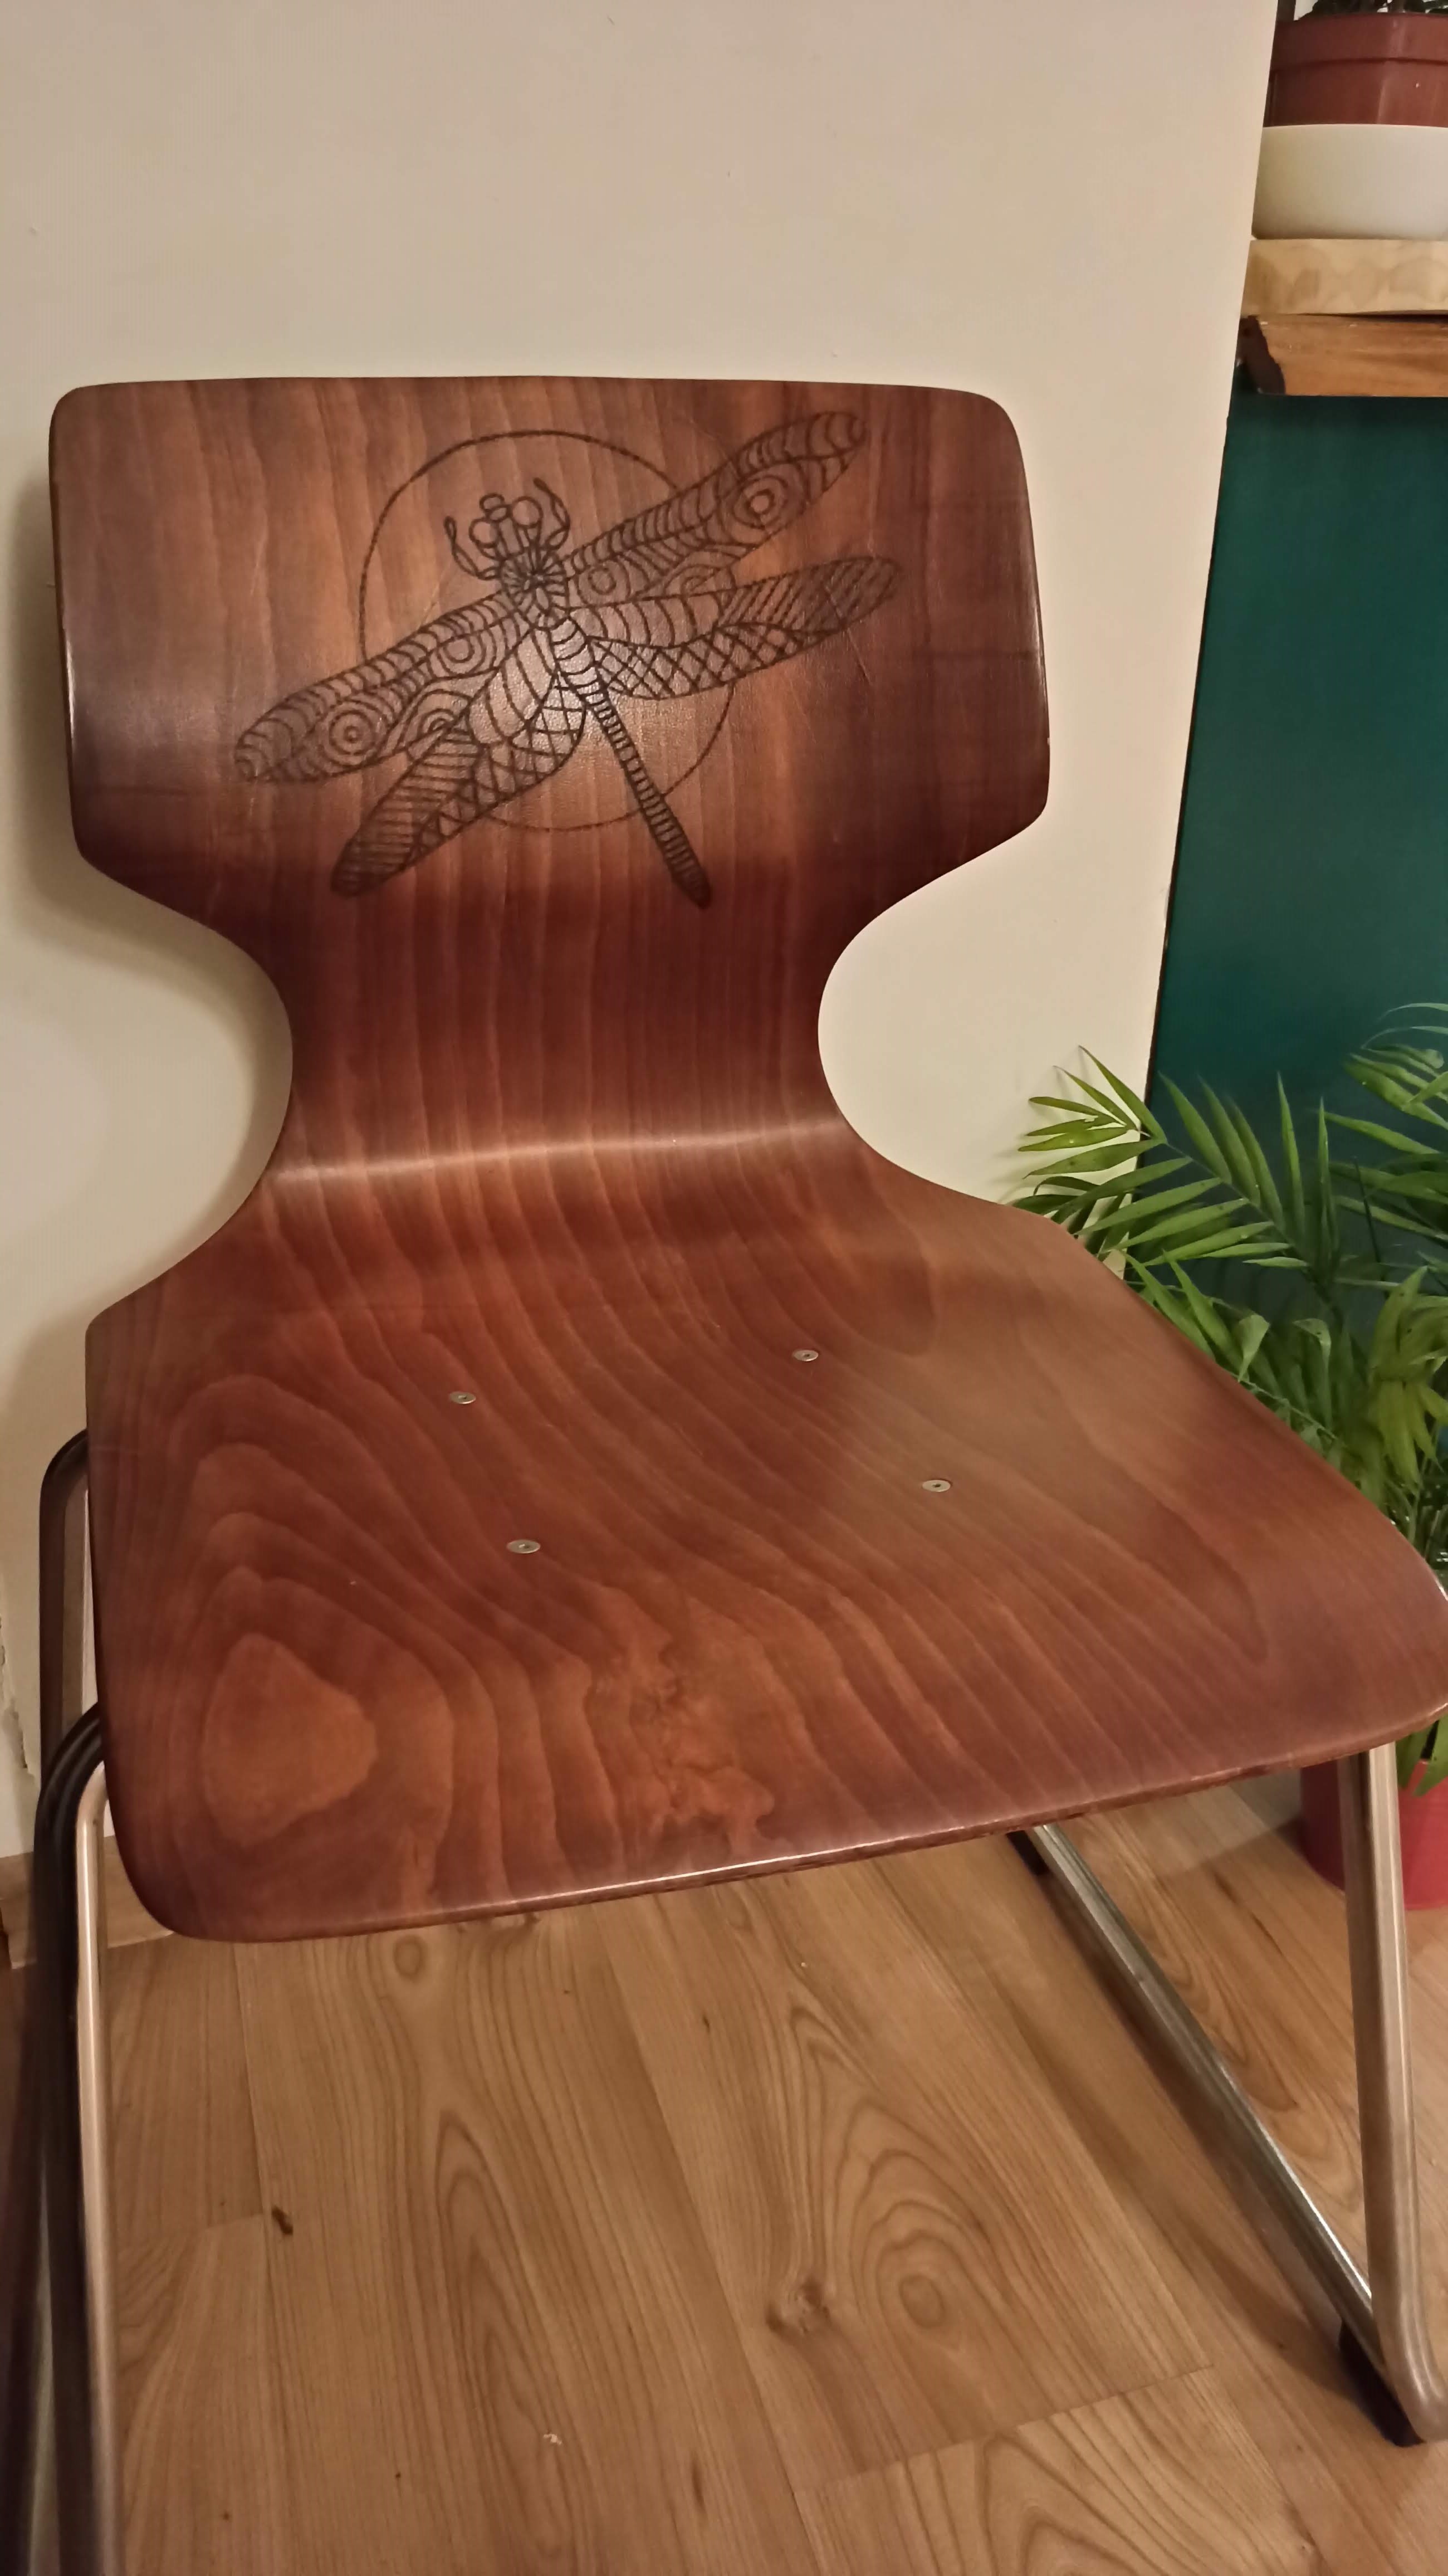 Odnowione krzesło z ważką wykonaną metodą pirografii. 